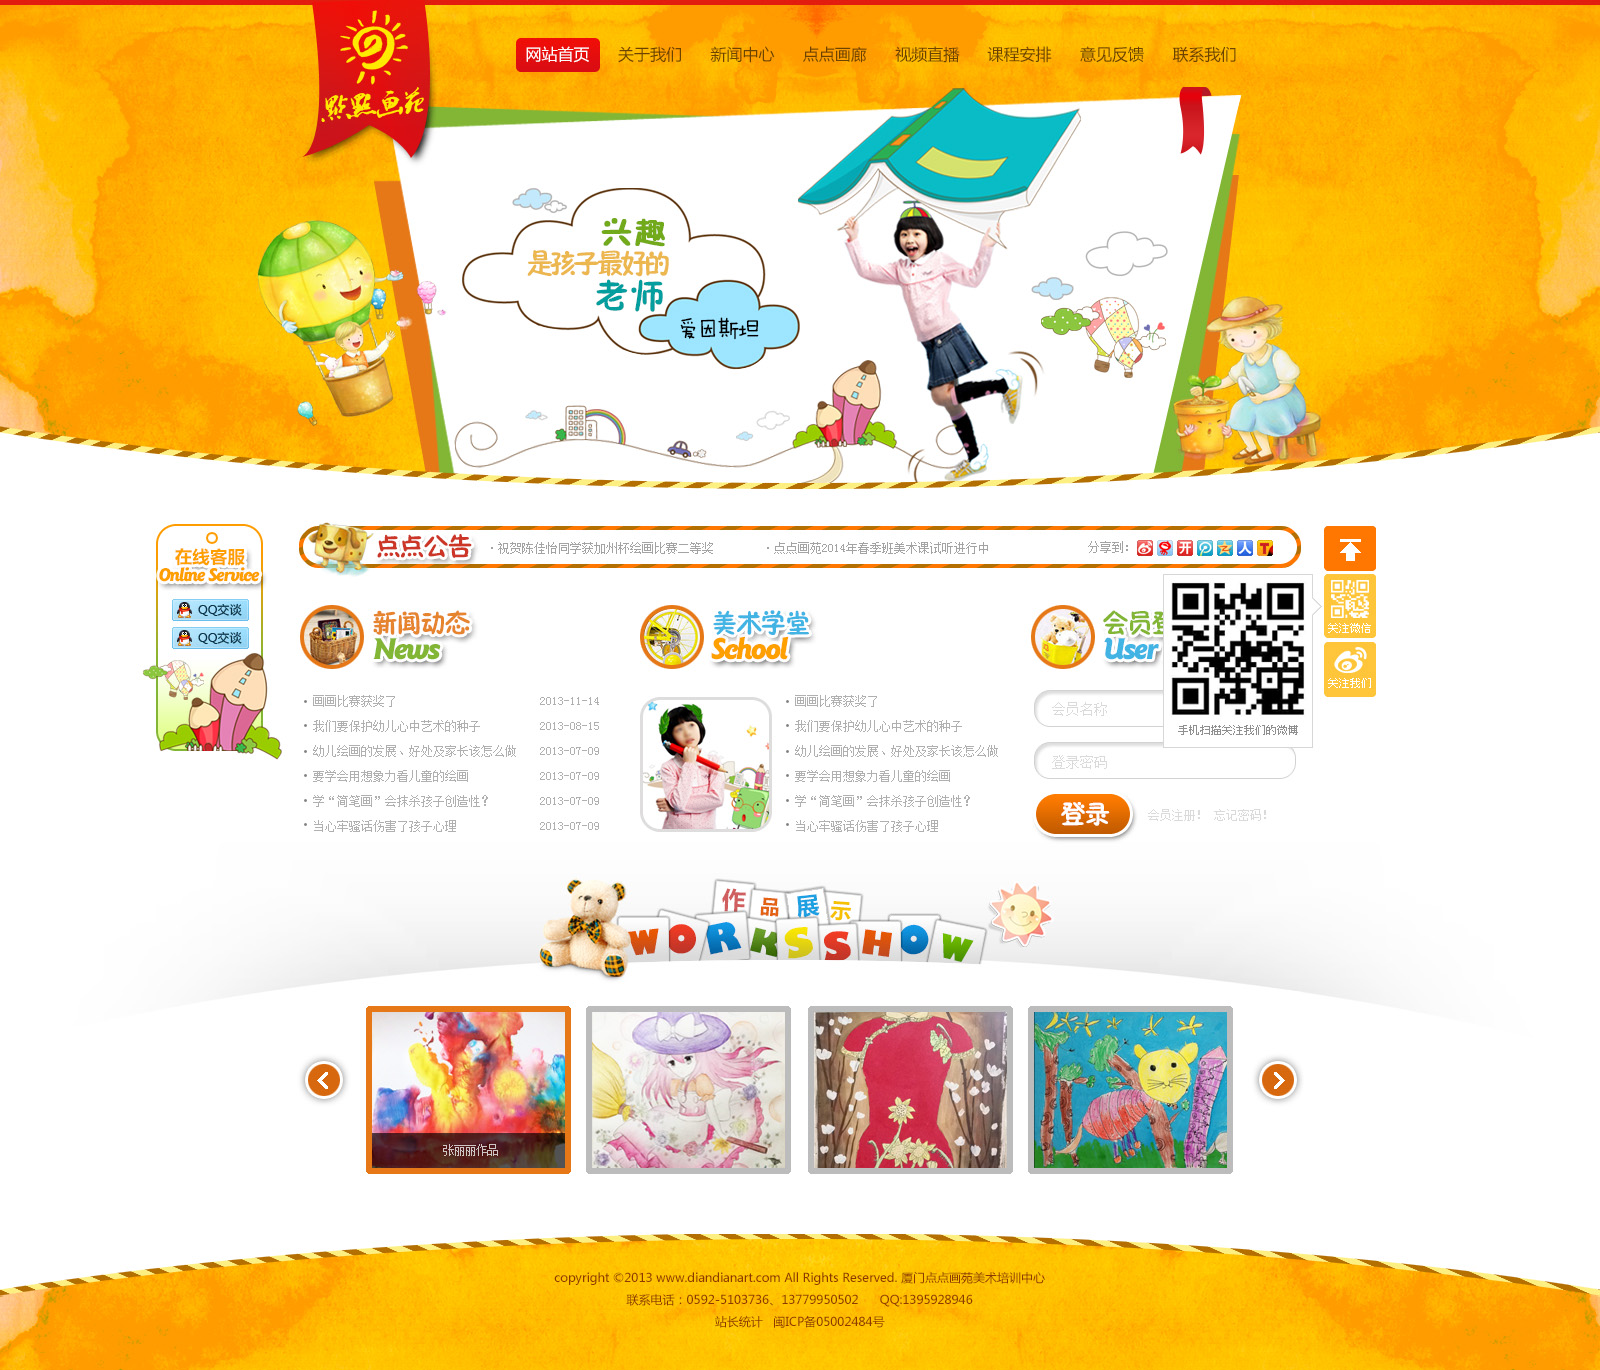 原创幼儿画室画苑网站设计PSD网站模板源码